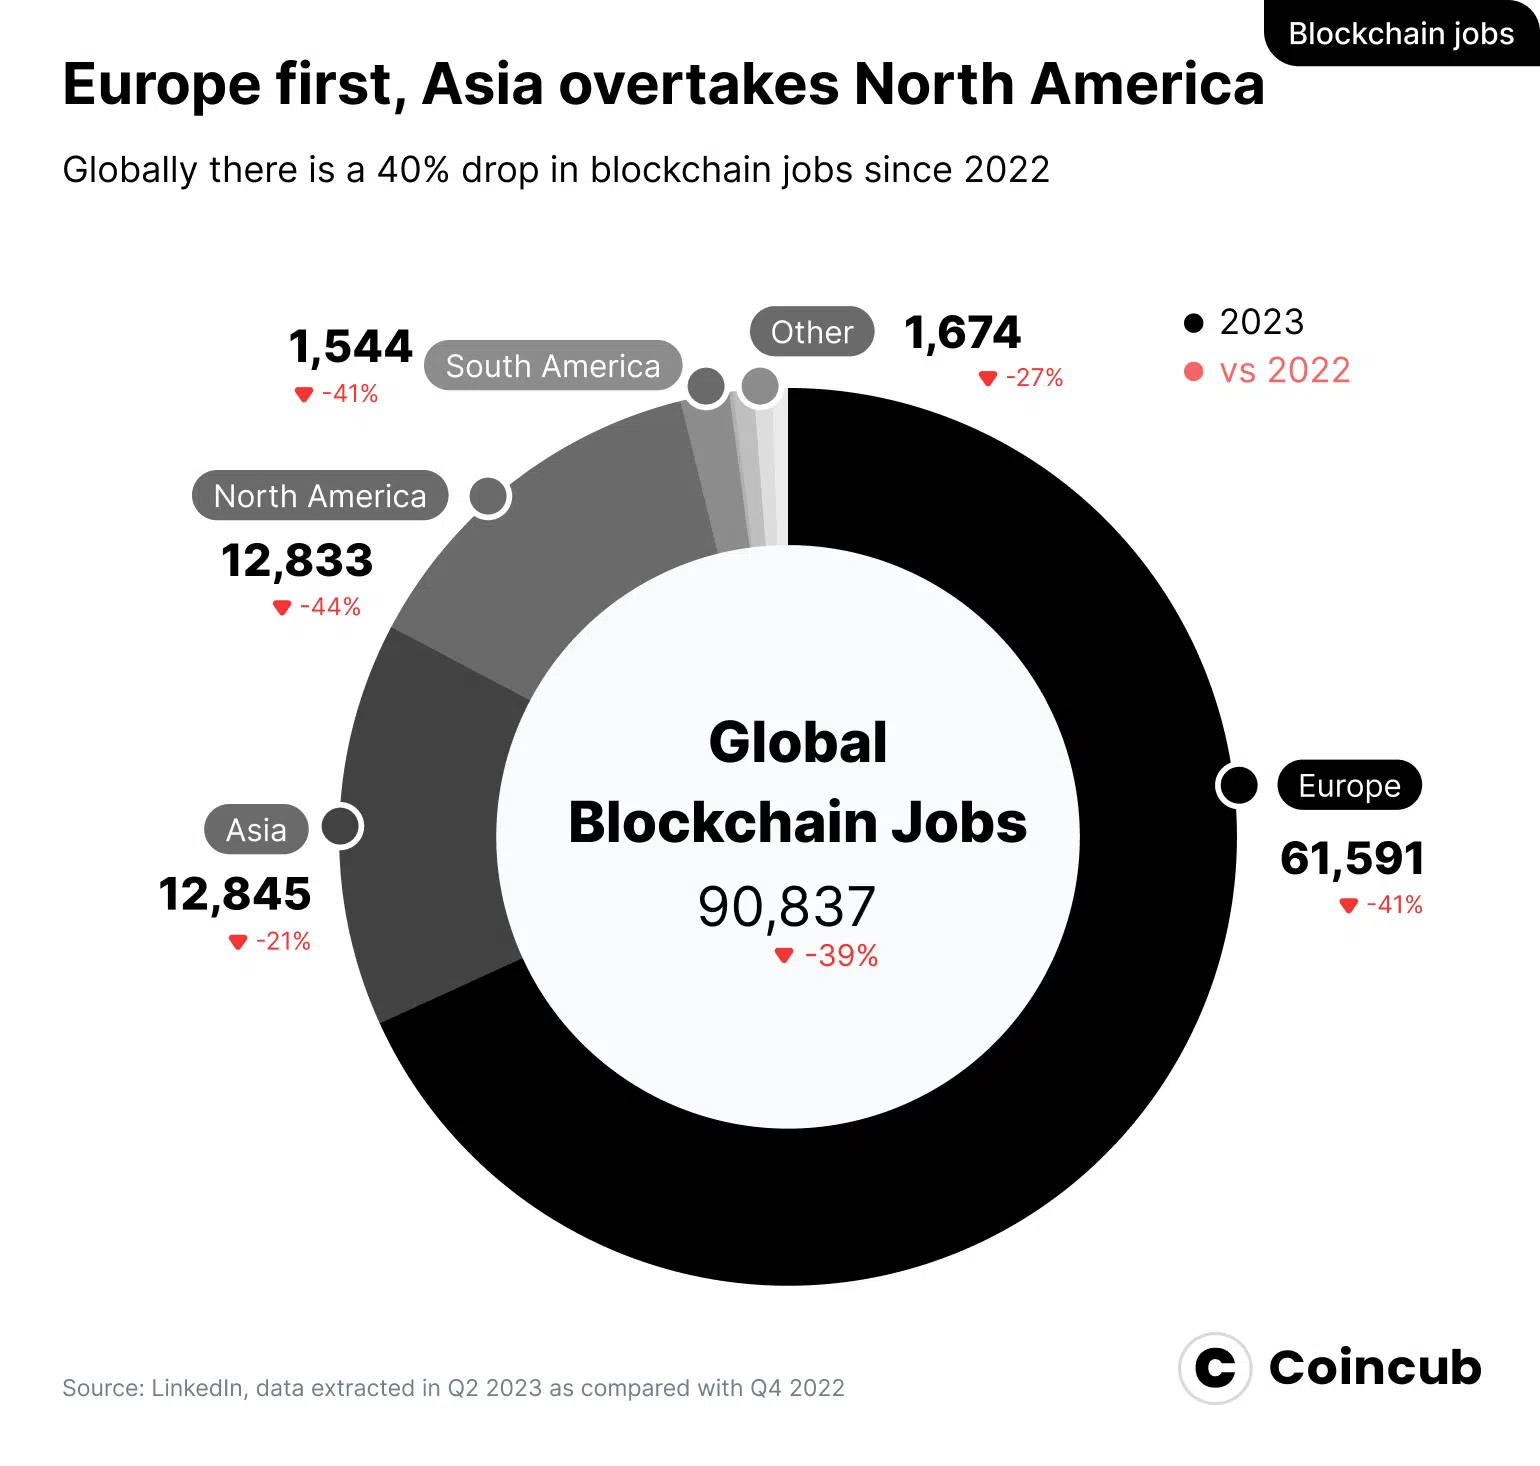 Blockchain jobs per region 2023